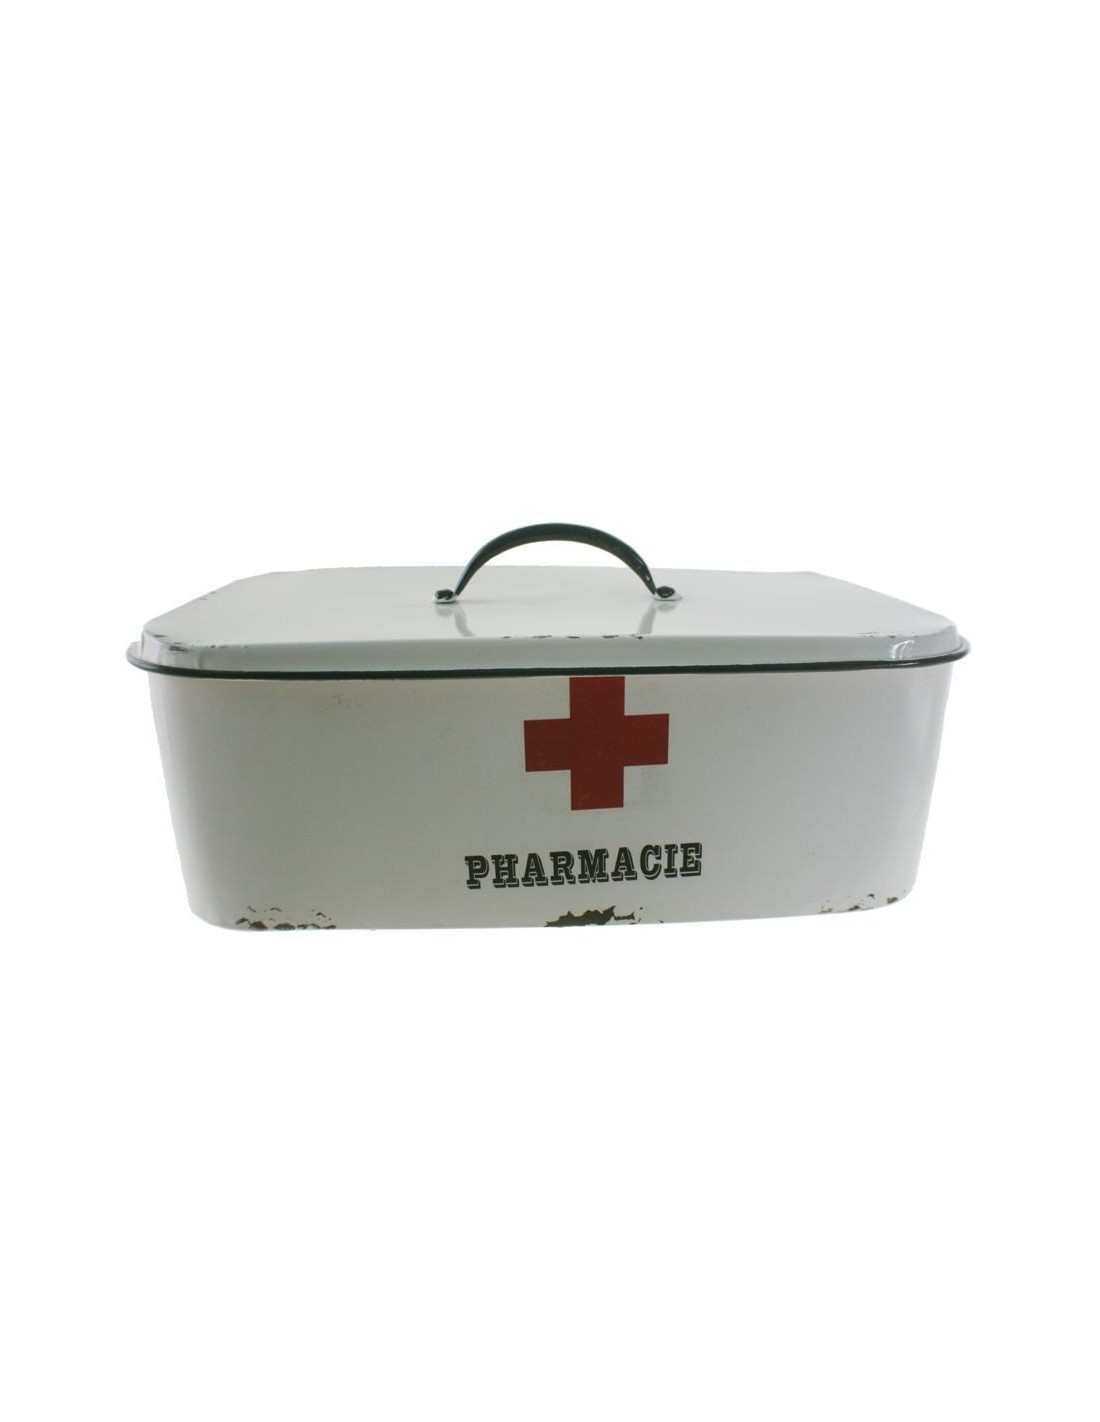 Caja para almacenar medicinas de metal color blanco estilo vintage